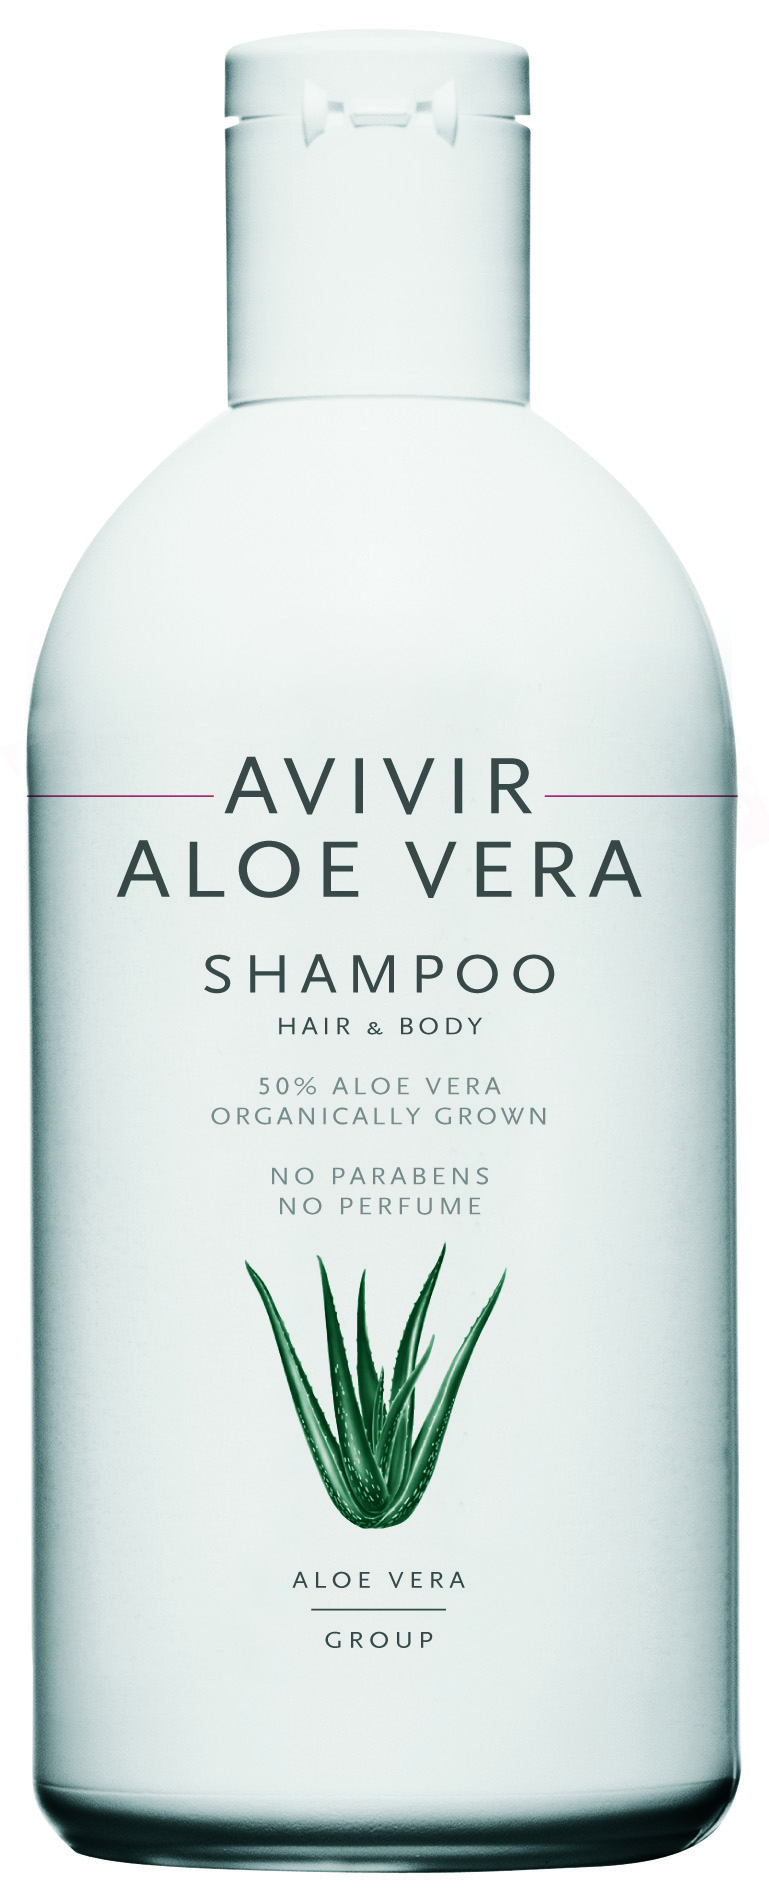 AVIVIR Aloe Vera Shampoo 300ml